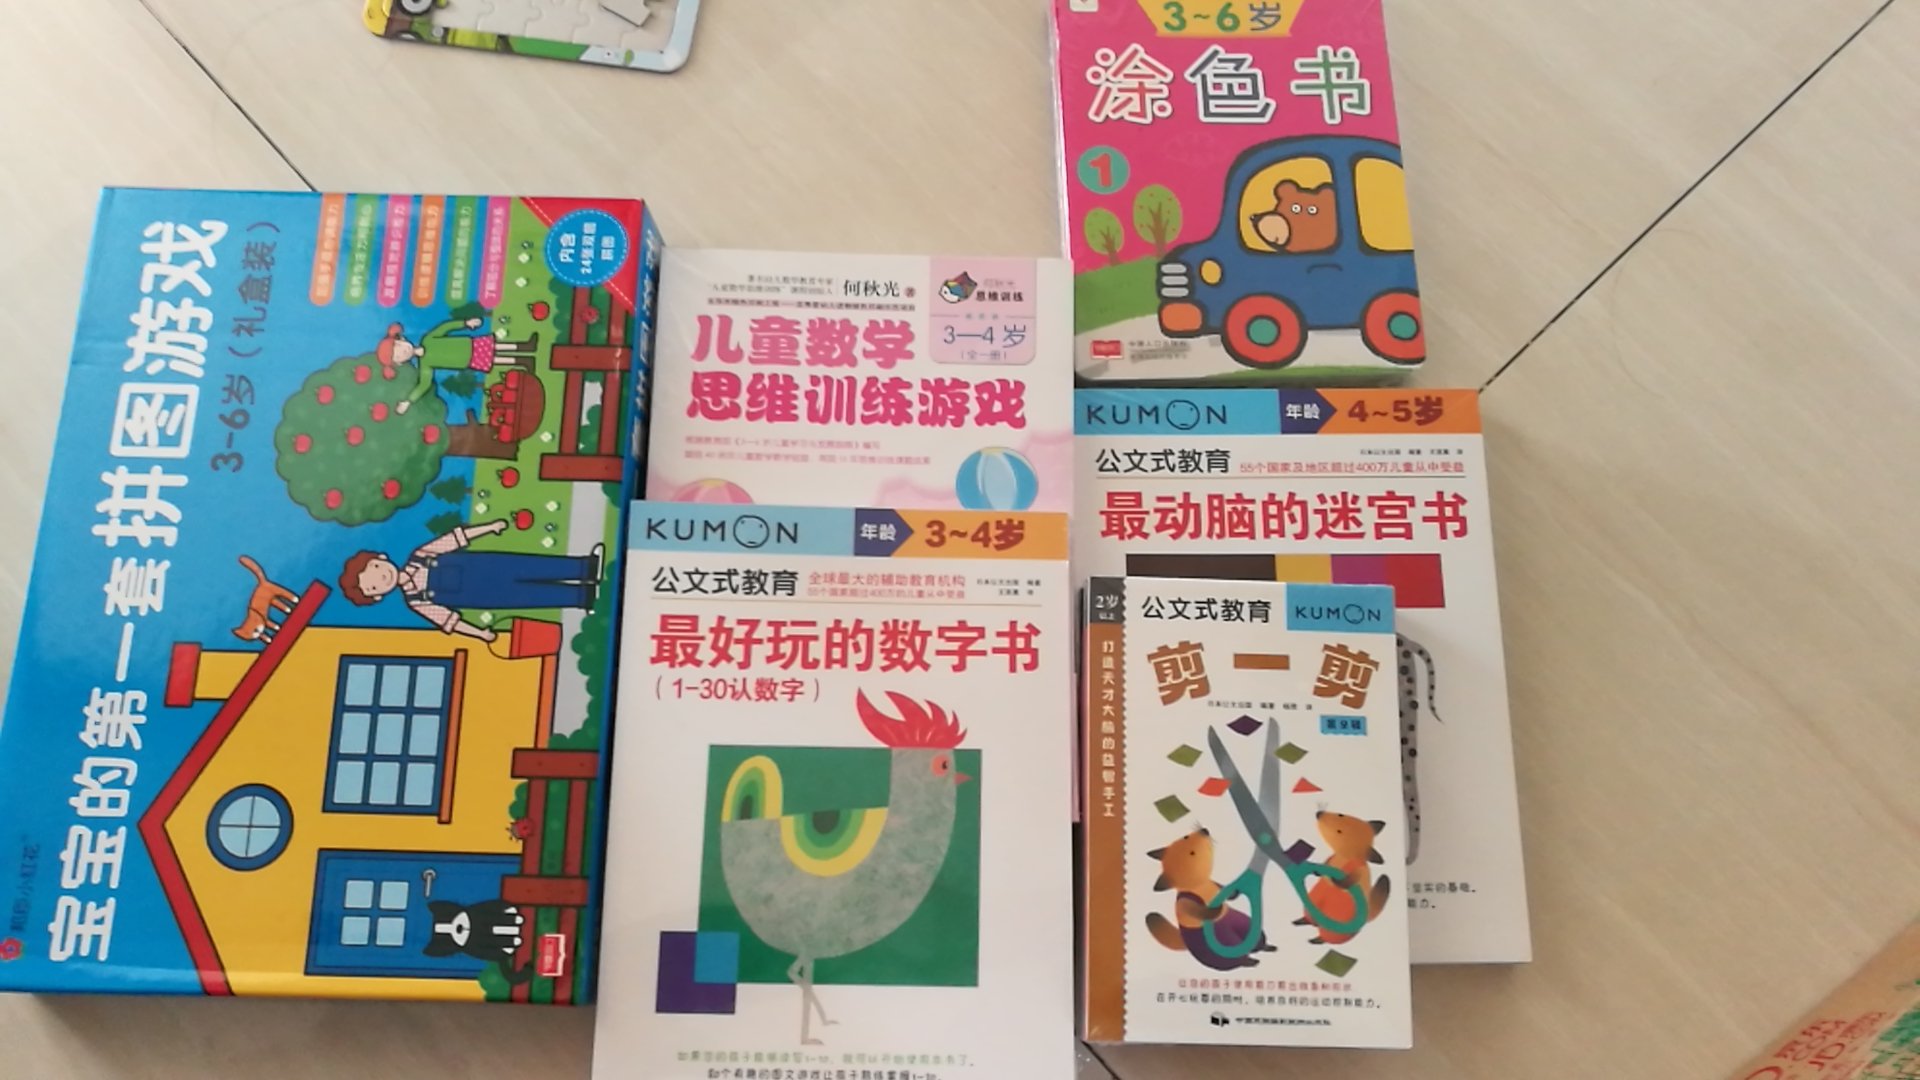   何秋光是我国著名幼儿数学教育专家、“儿童数学思维训练”课程的创始人、现为 北京师范大学实验幼儿园客座专家、教师。从业近40年，她一直潜心研究“儿童数学思维教育理论体系”，并于2000年，在我国著名的北京师范大学实验幼儿 园始创数学特色课——“儿童数学思维训练”课程，一直以来，深受广大家长、小朋友和学前教育工作者的喜爱